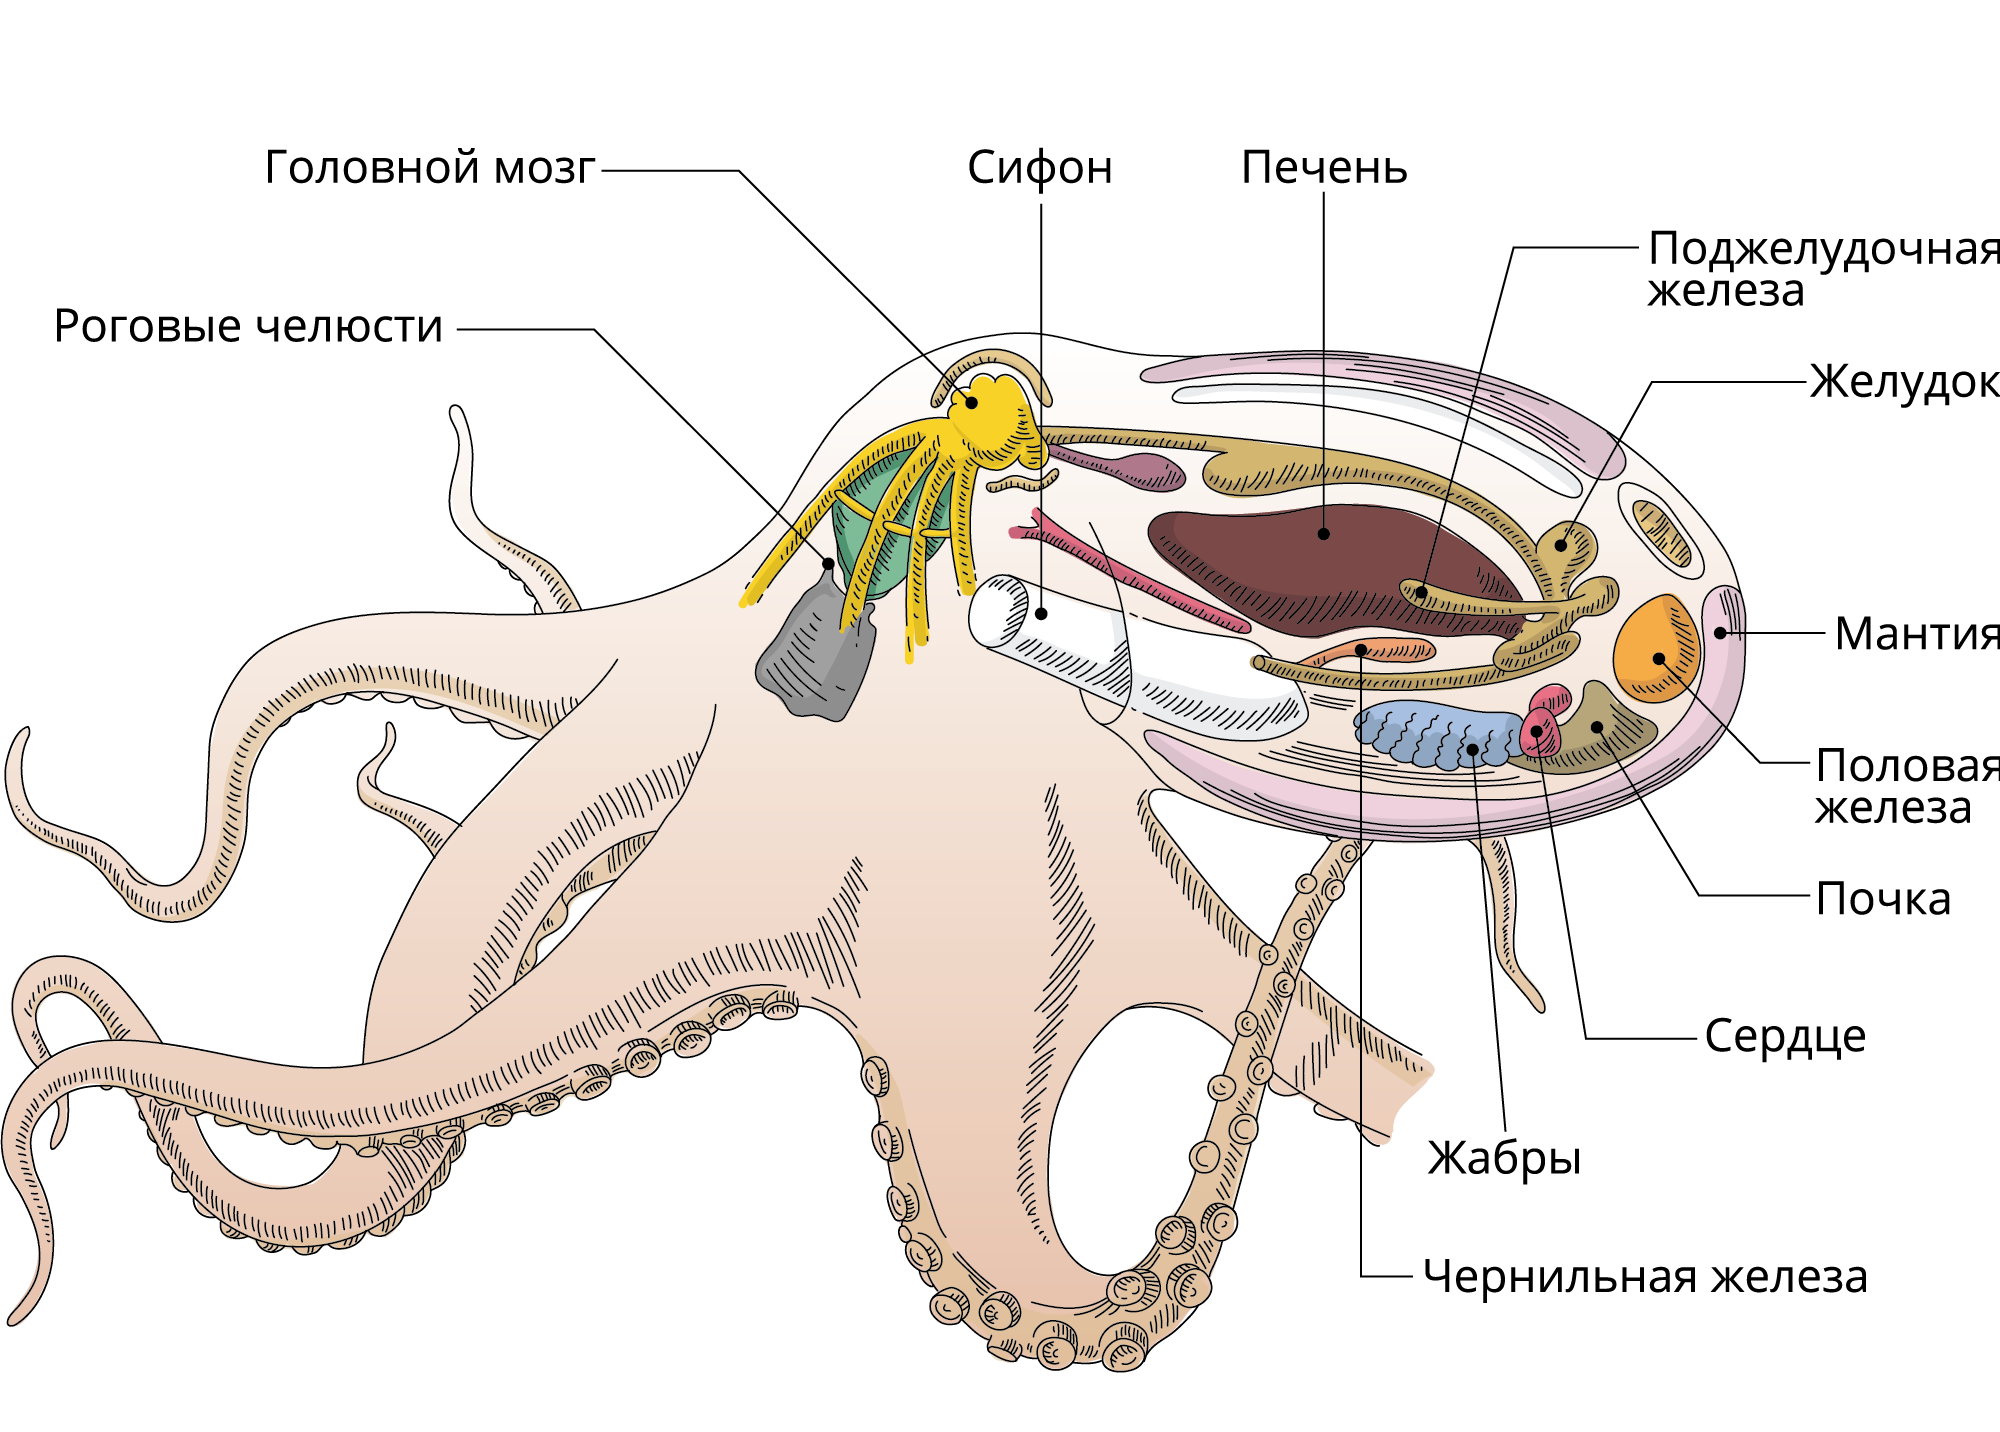 Сердце головоногих. Выделительная система головоногих. Выделительная система осьминога. Осьминог анатомия выделительная система. Головоногие моллюски пищеварительная система.